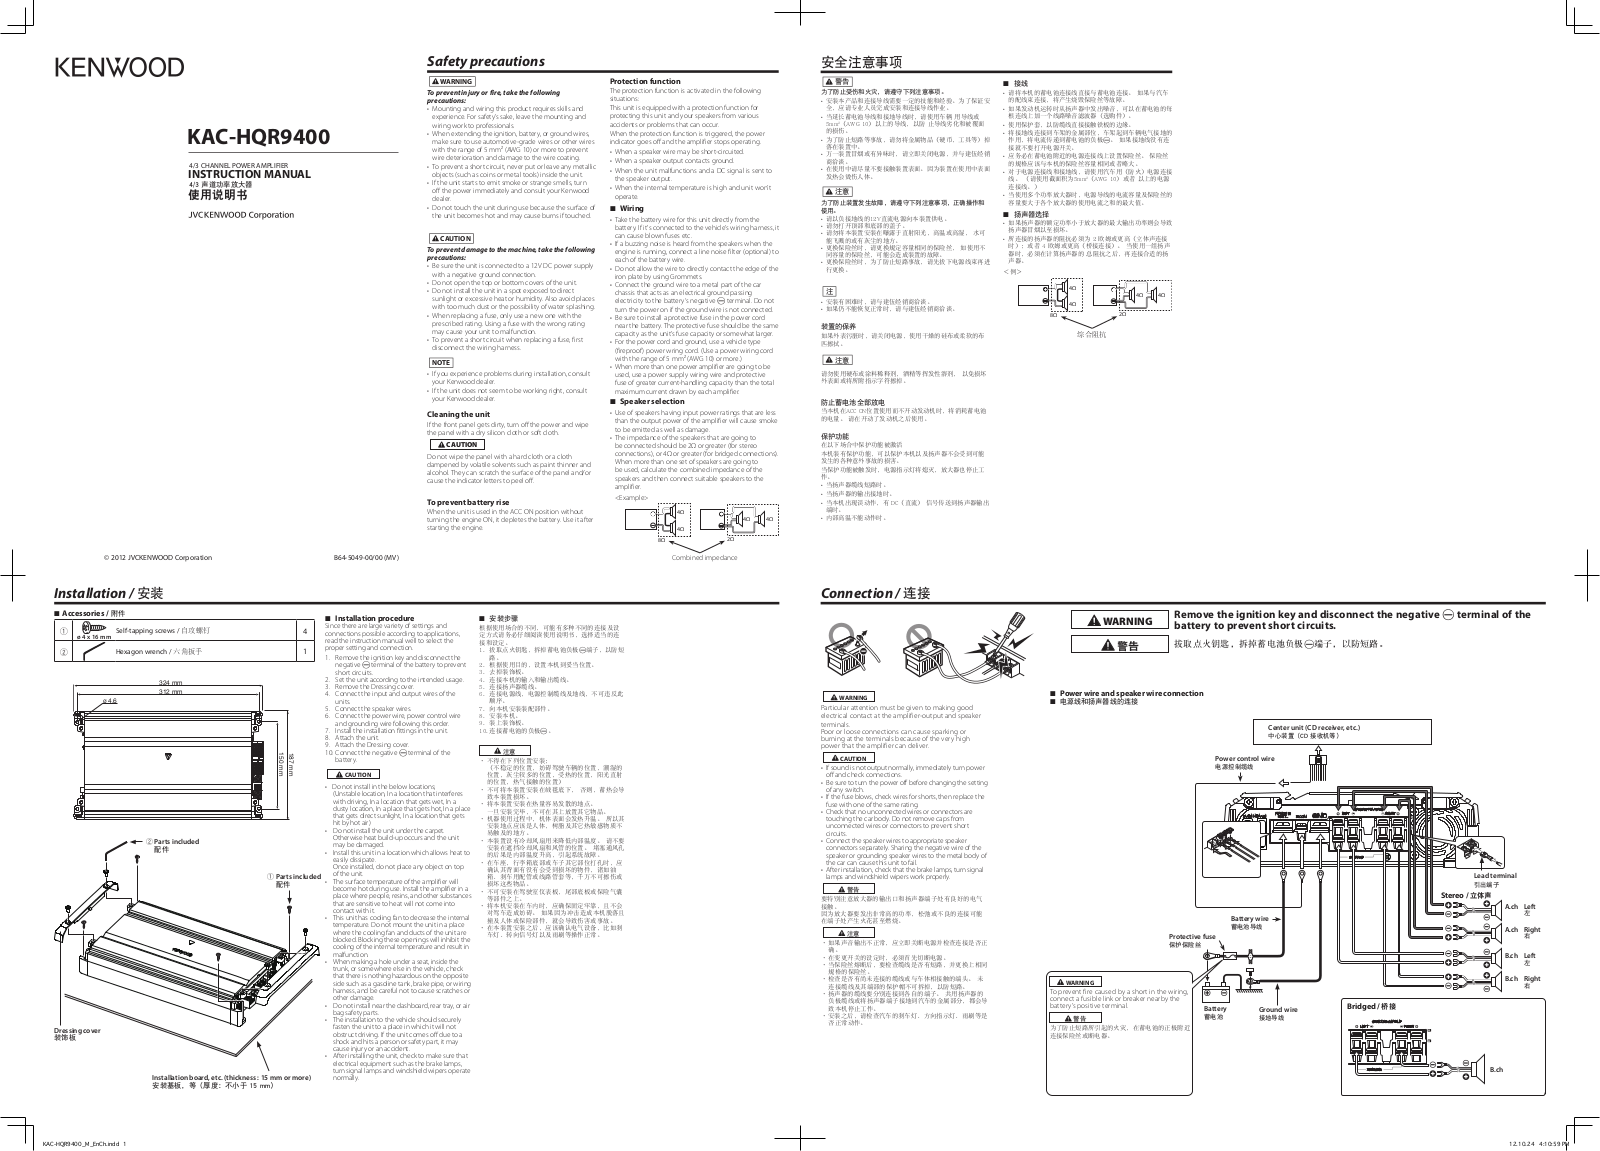 Kenwood KAC-HQR9400 Manual